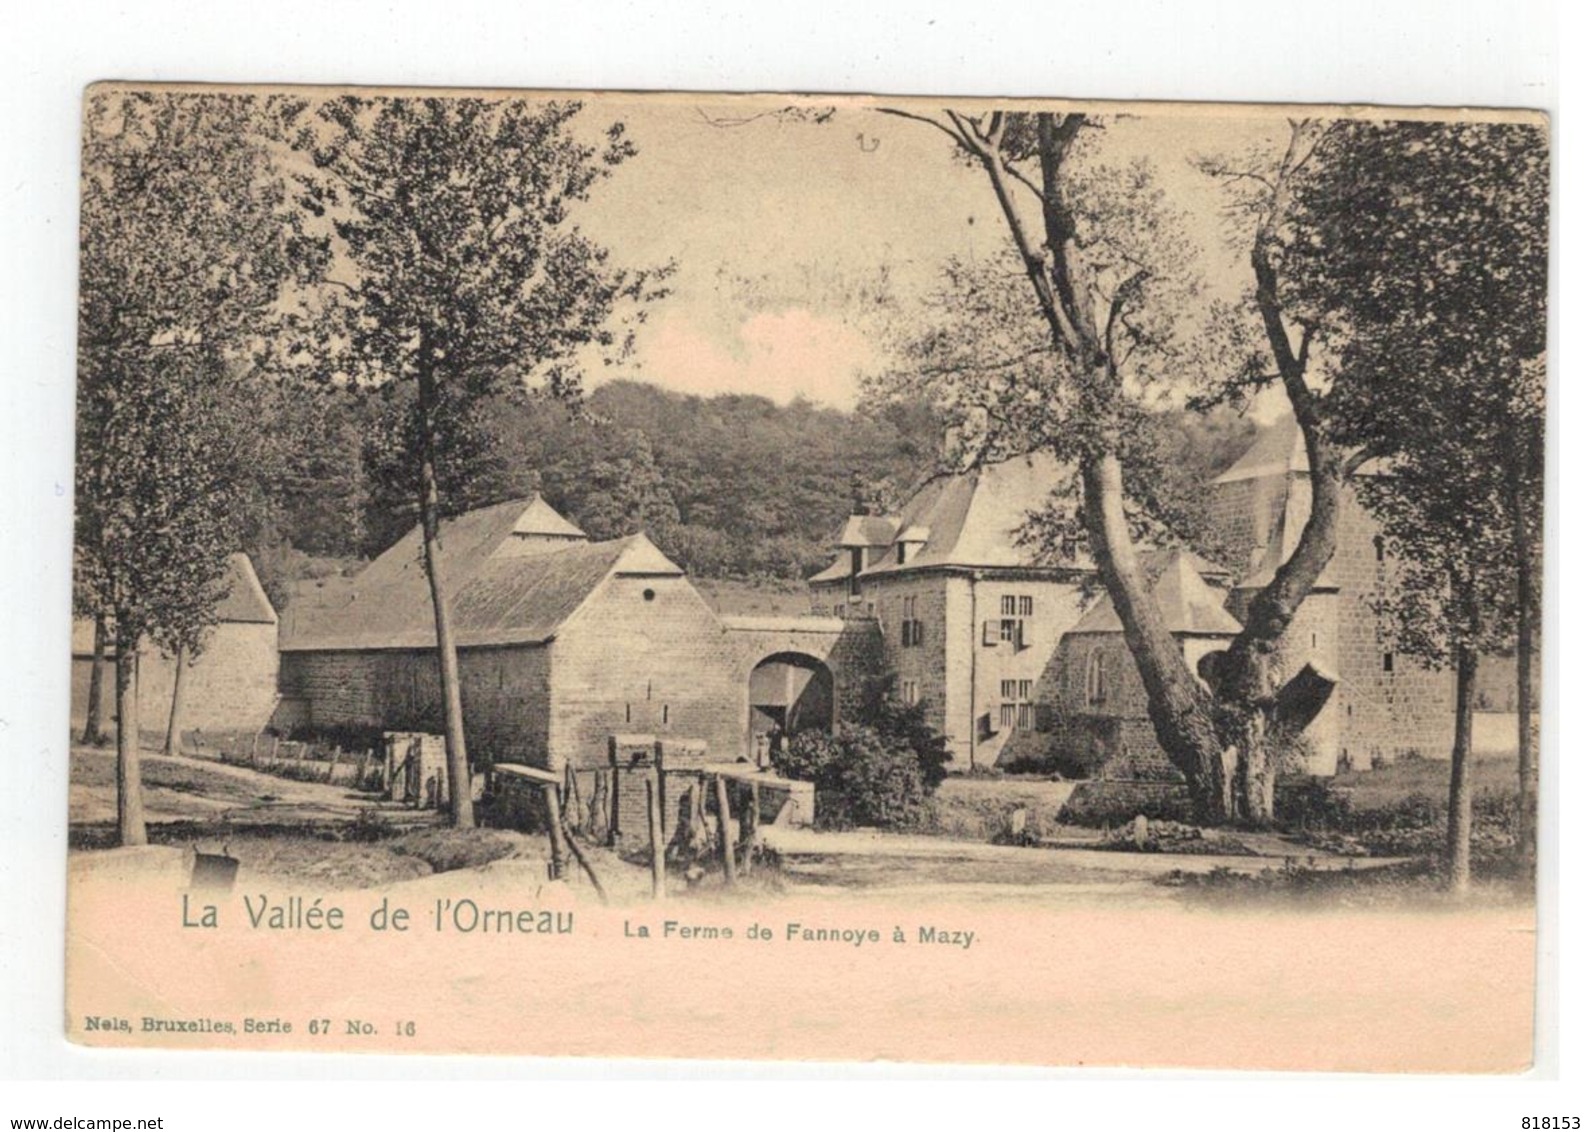 Mazy : La Vallée De L'Orneau  La Ferme De Fannoye à Mazy 1913 - Gembloux